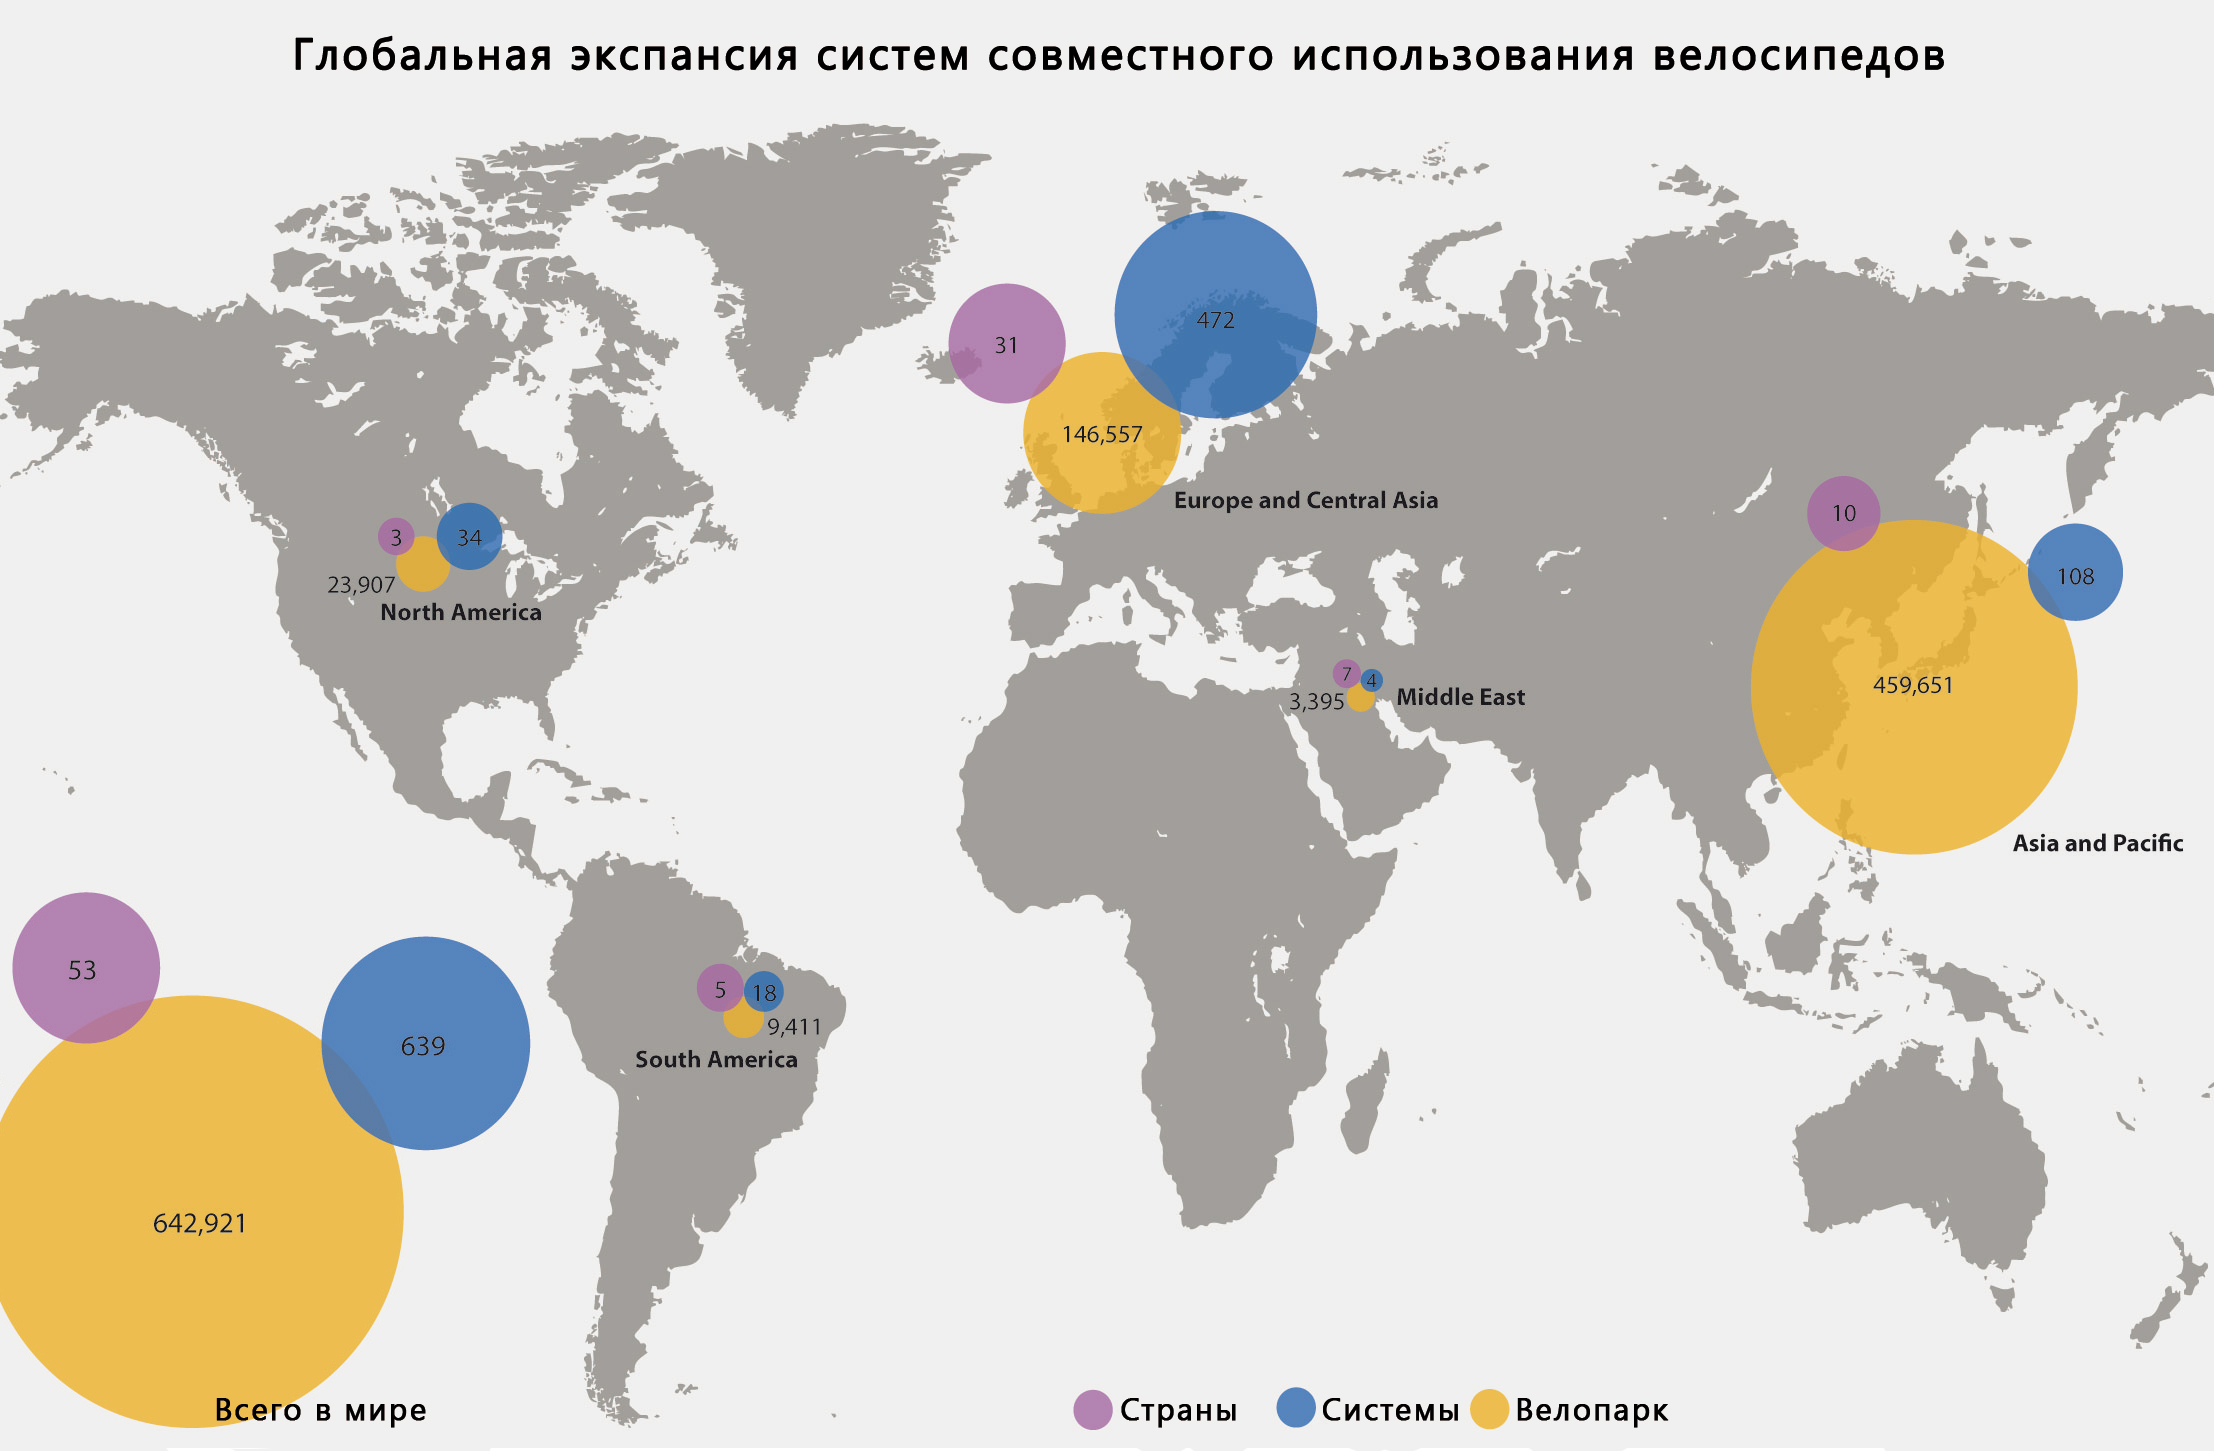 Карта, отображающая количество стран, систем совместного использования велосипедов и размеры велопарков по регионам.